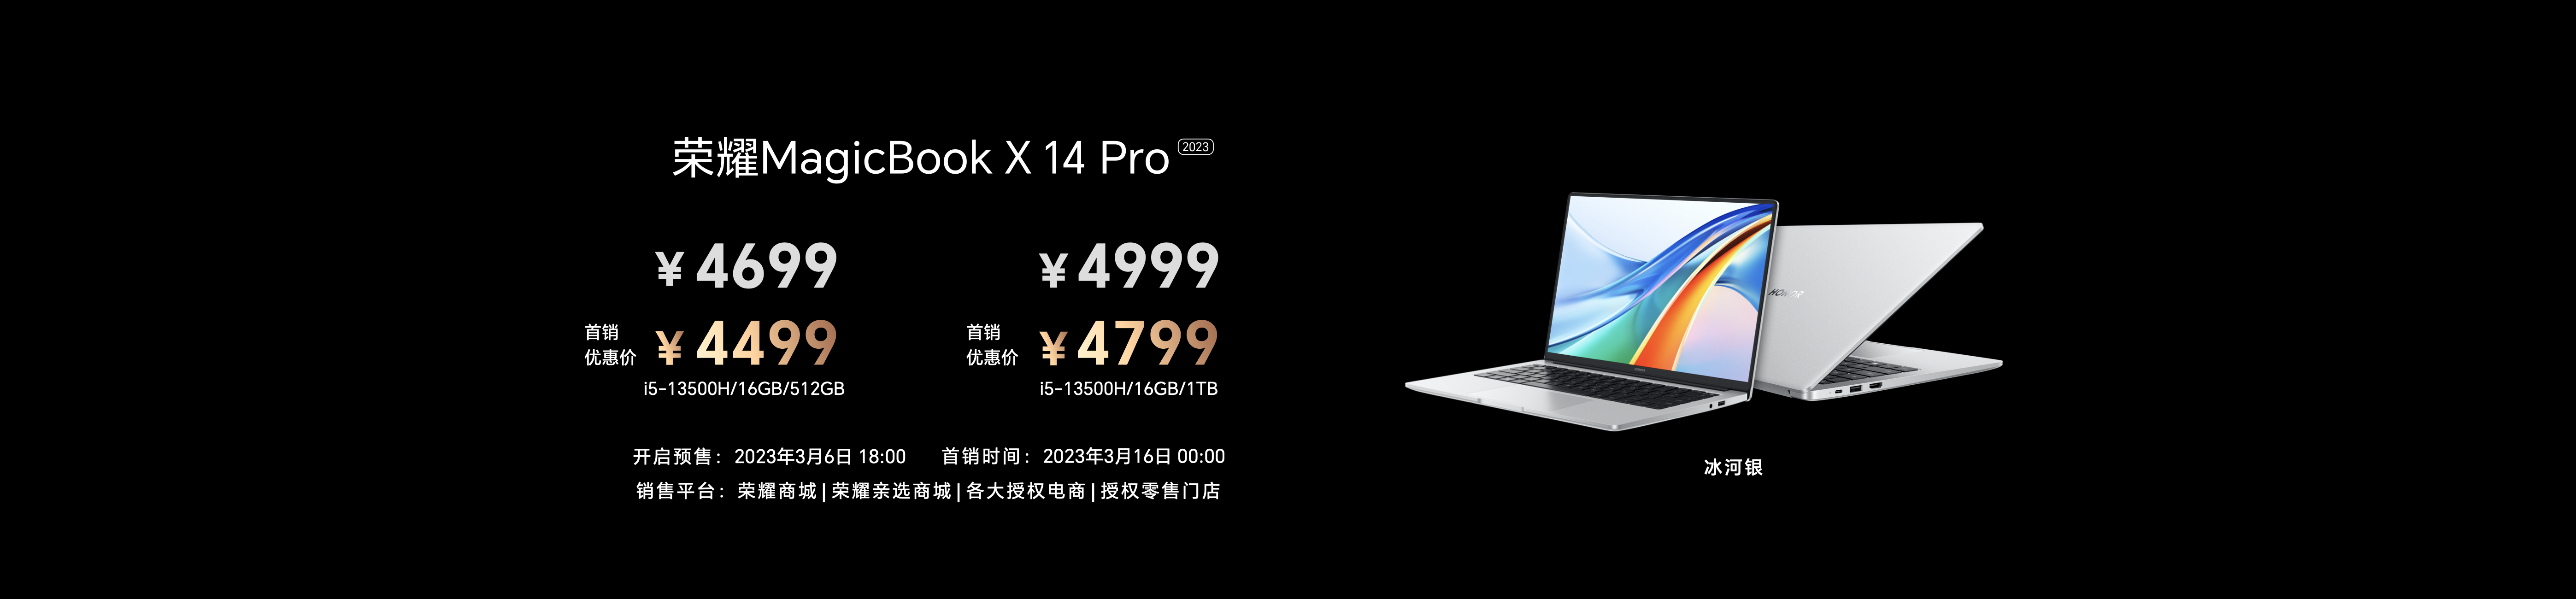 荣耀MagicBook X Pro系列发布  轻薄高能打造跃级体验